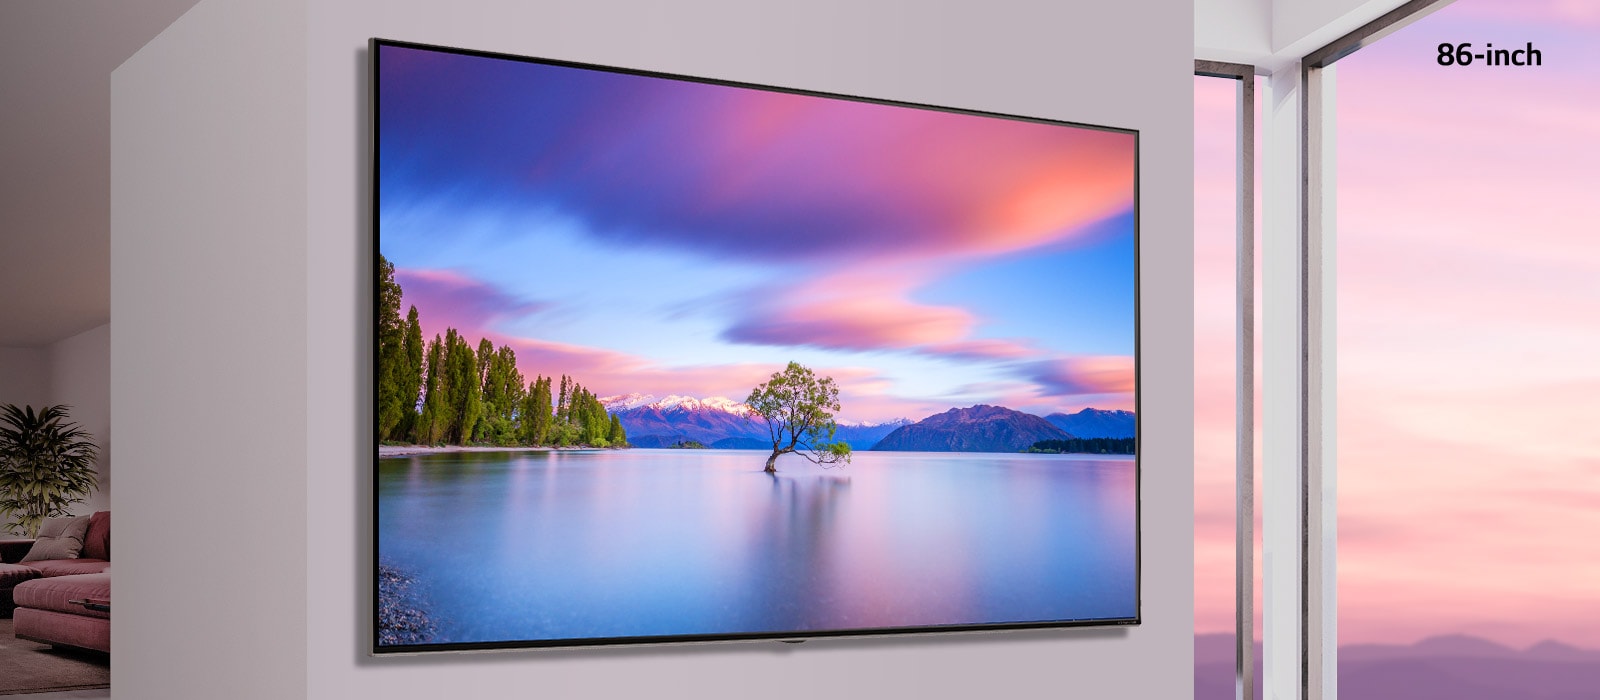 螢幕呈現了掛在白牆上的平面電視。左右滑動圖片，55 吋電視變成 86 吋的電視。